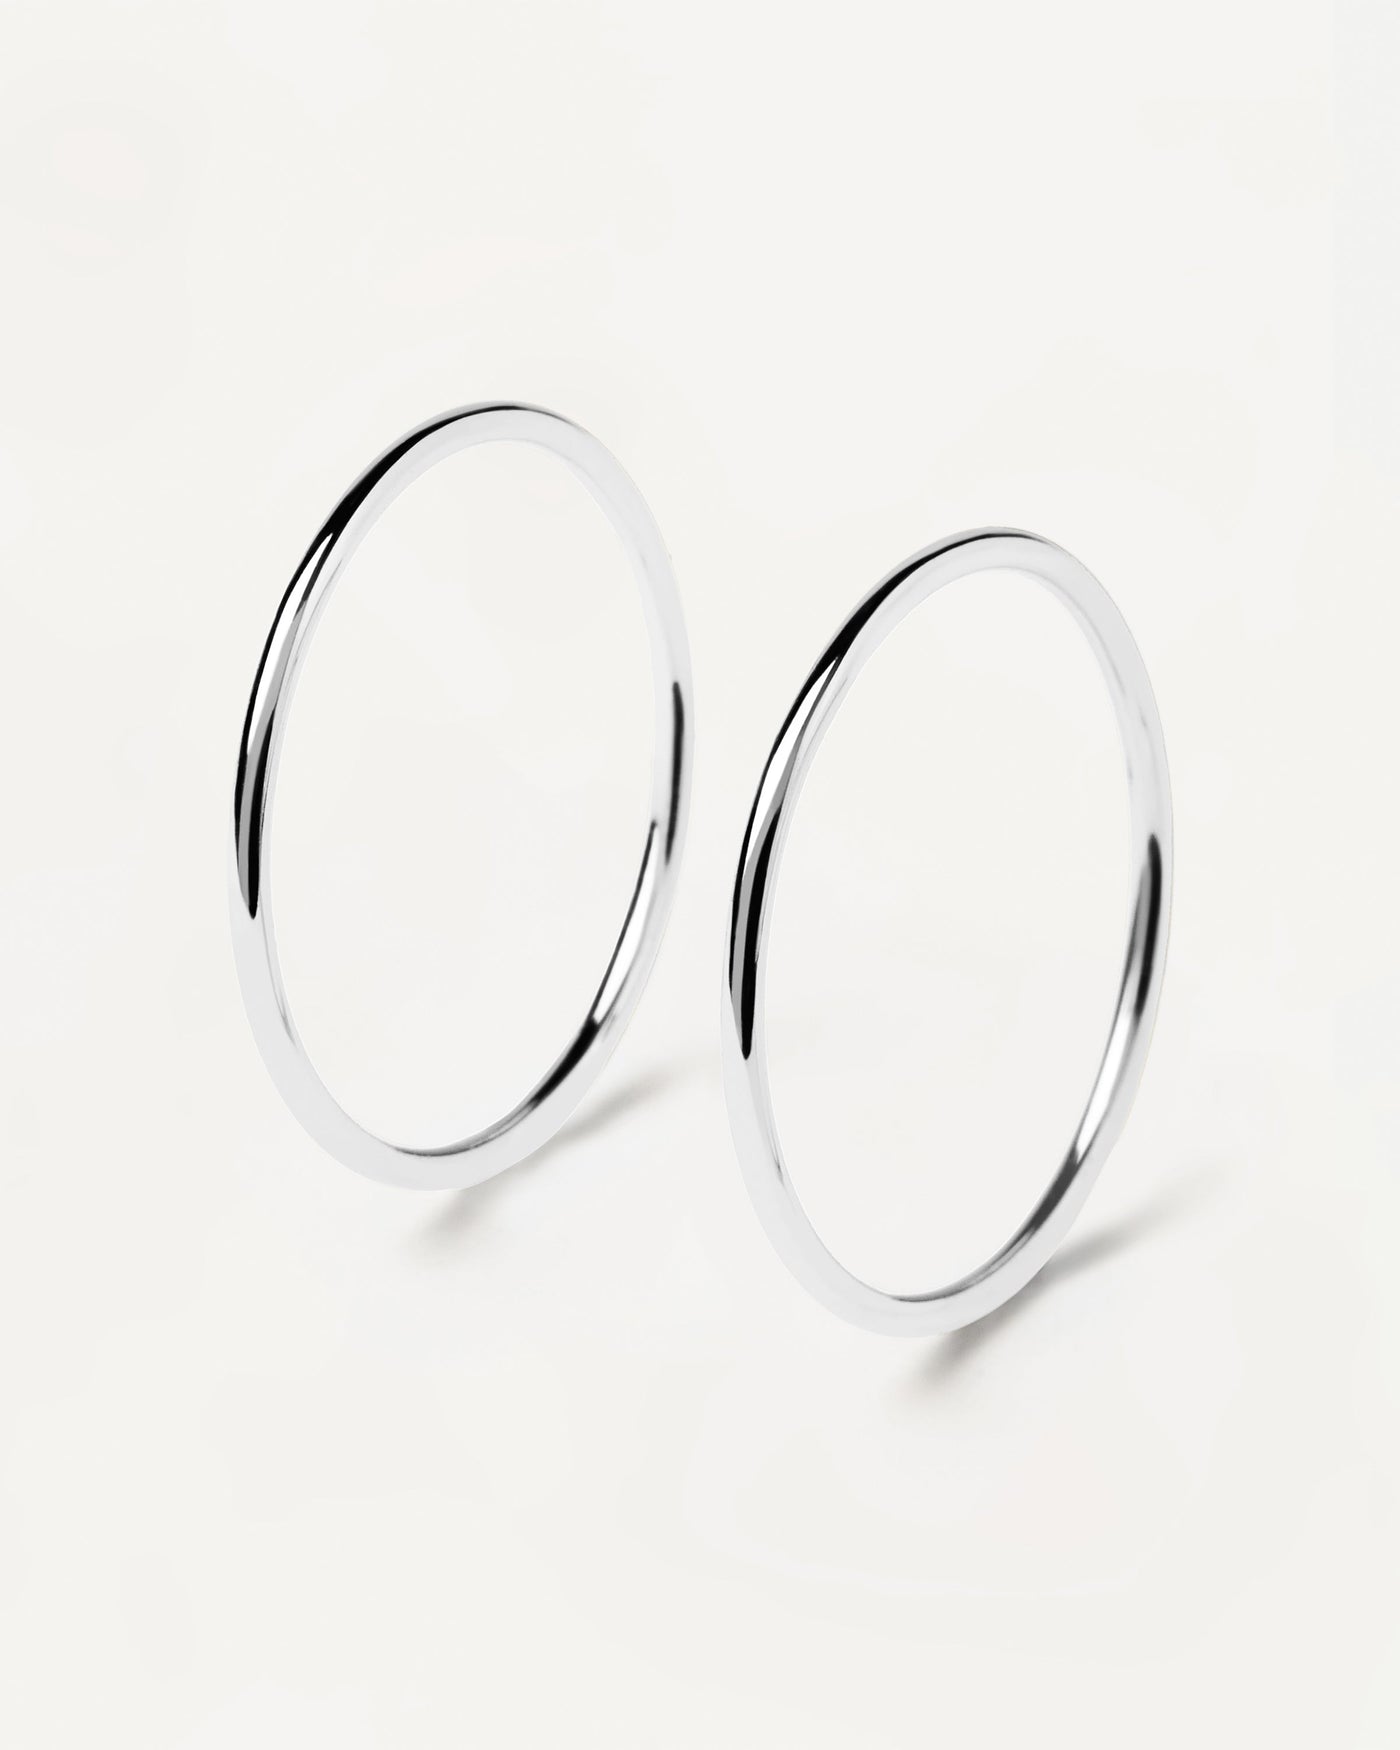 Twin Silberringe. paar stapelbare ringe aus 925er sterlingsilber. Erhalten Sie die neuesten Produkte von PDPAOLA. Geben Sie Ihre Bestellung sicher auf und erhalten Sie diesen Bestseller.